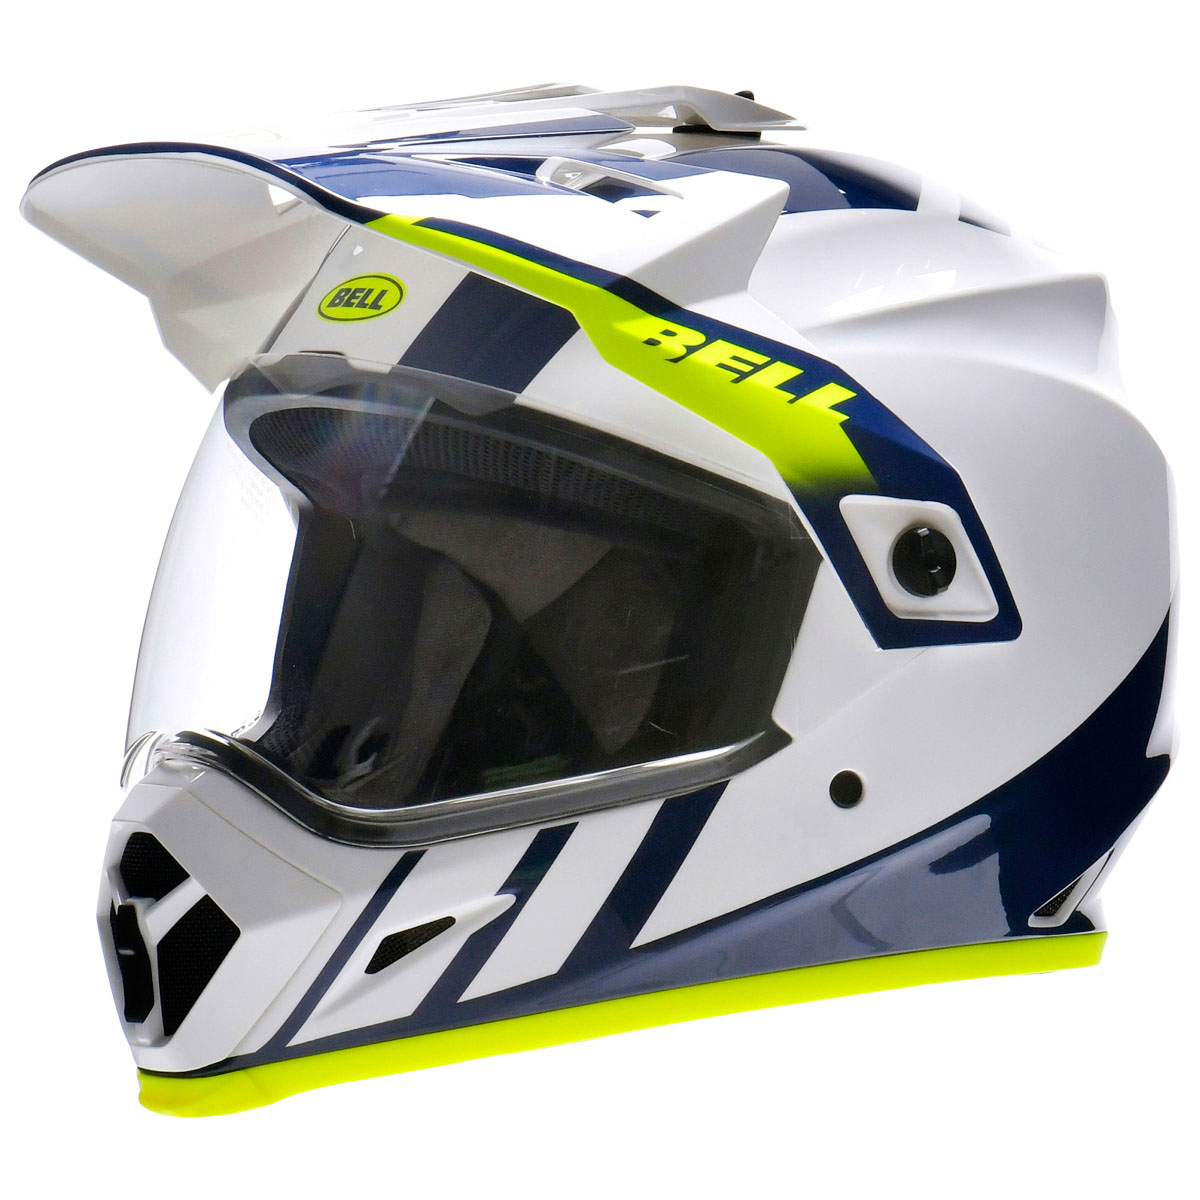 オフロードヘルメットの種類と選び方| Dirtbikeplus (ダートバイクプラス)